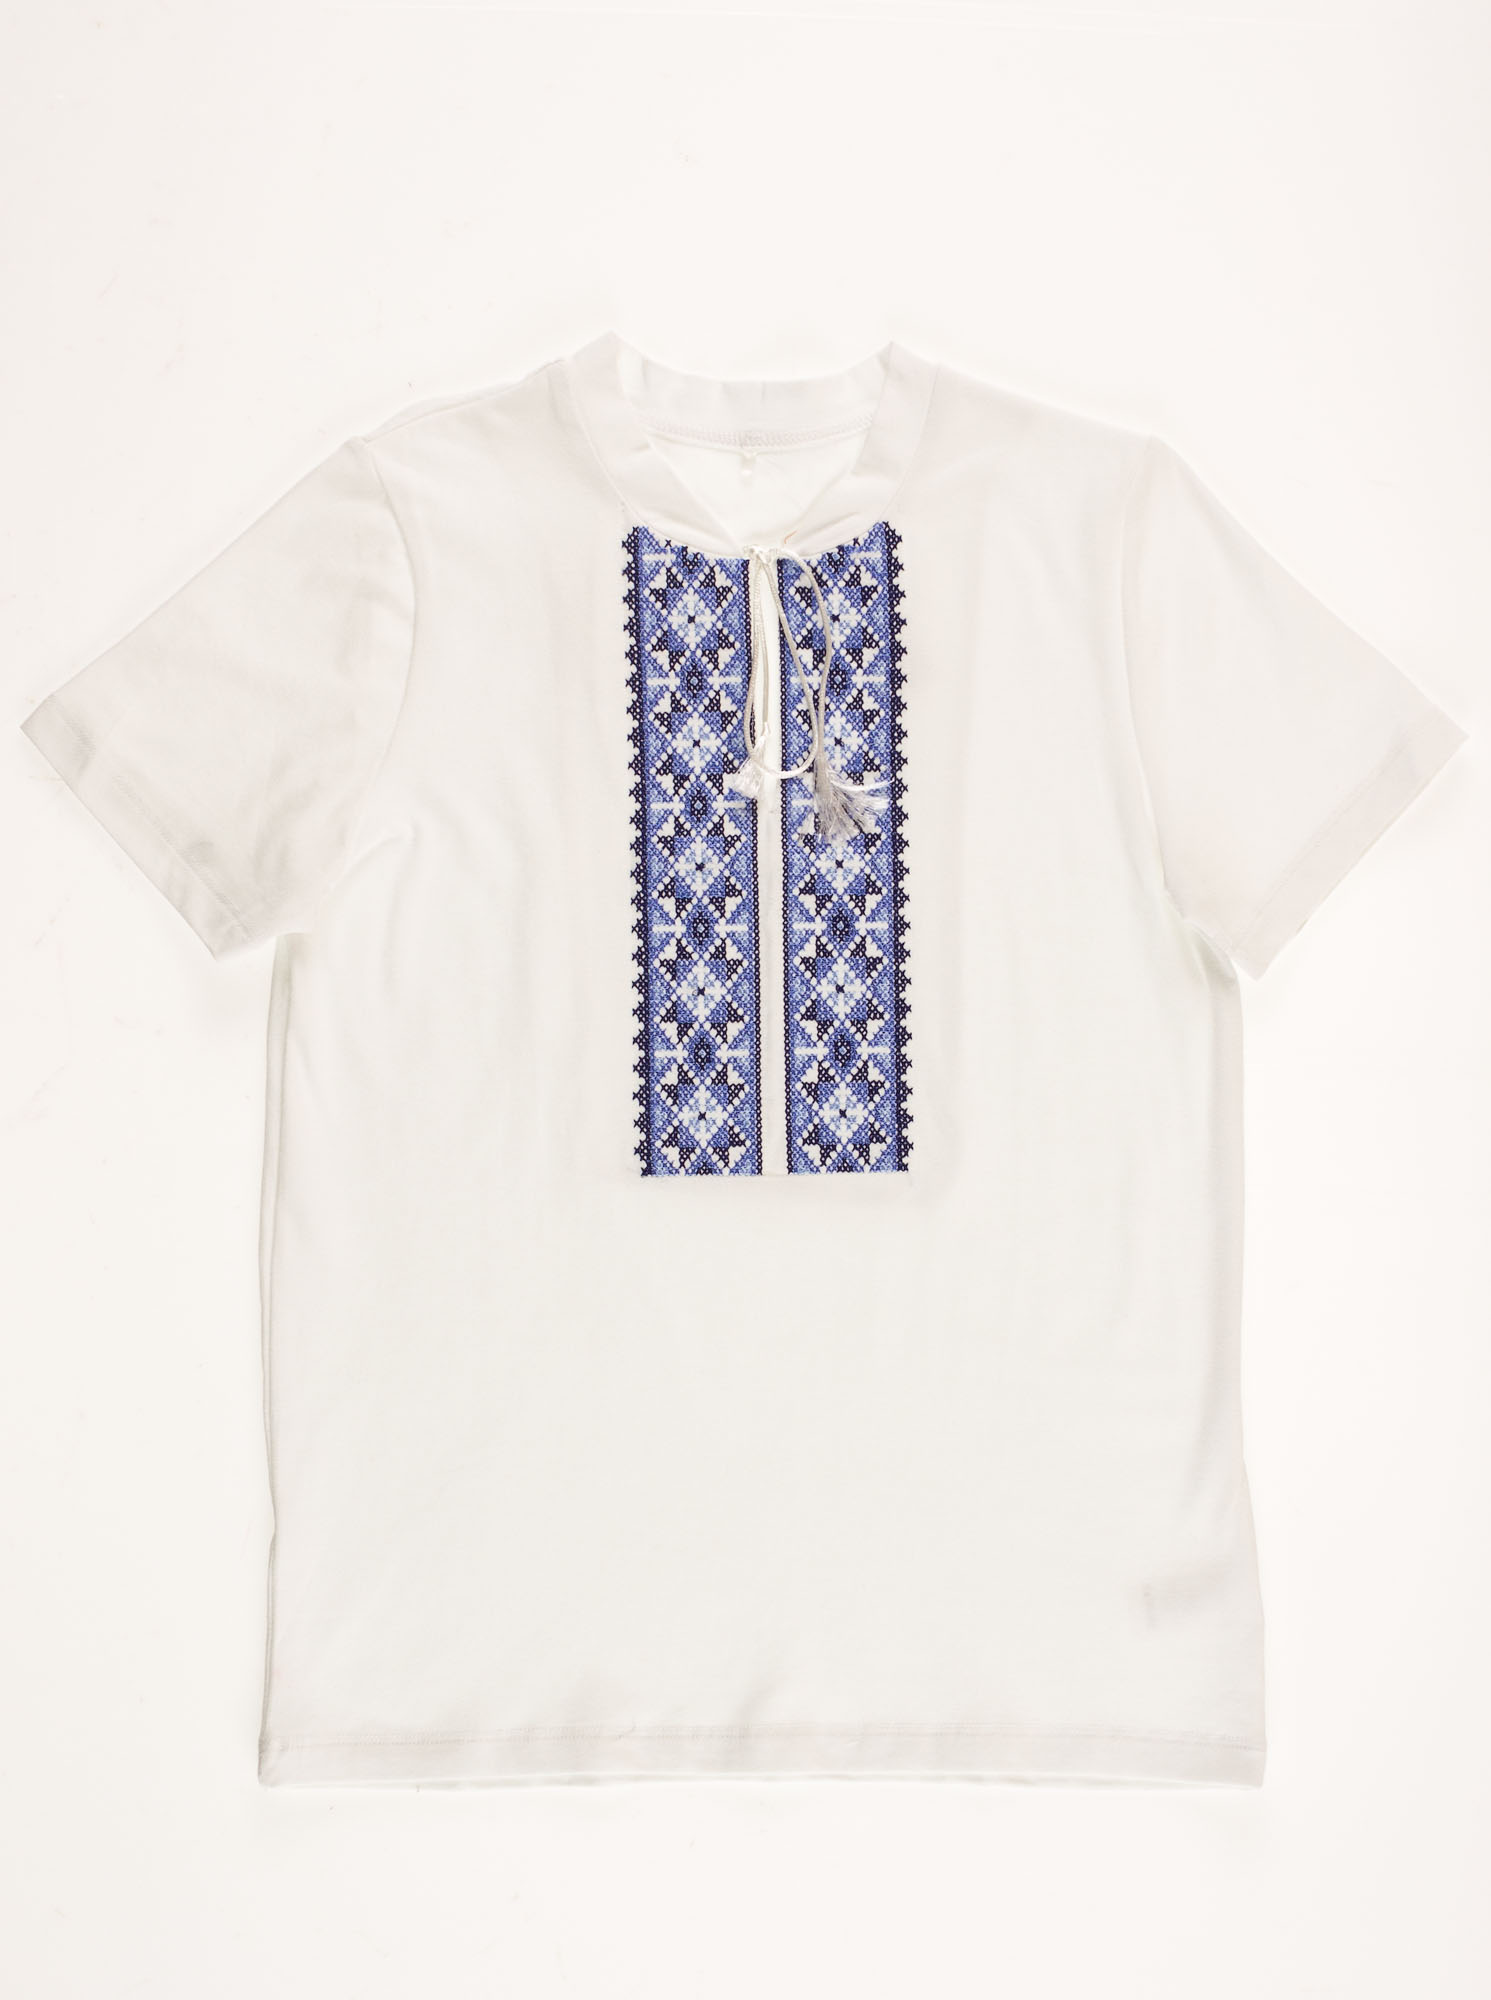 Вышиванка-футболка для мальчика Фабрика голубая 6020В - ціна